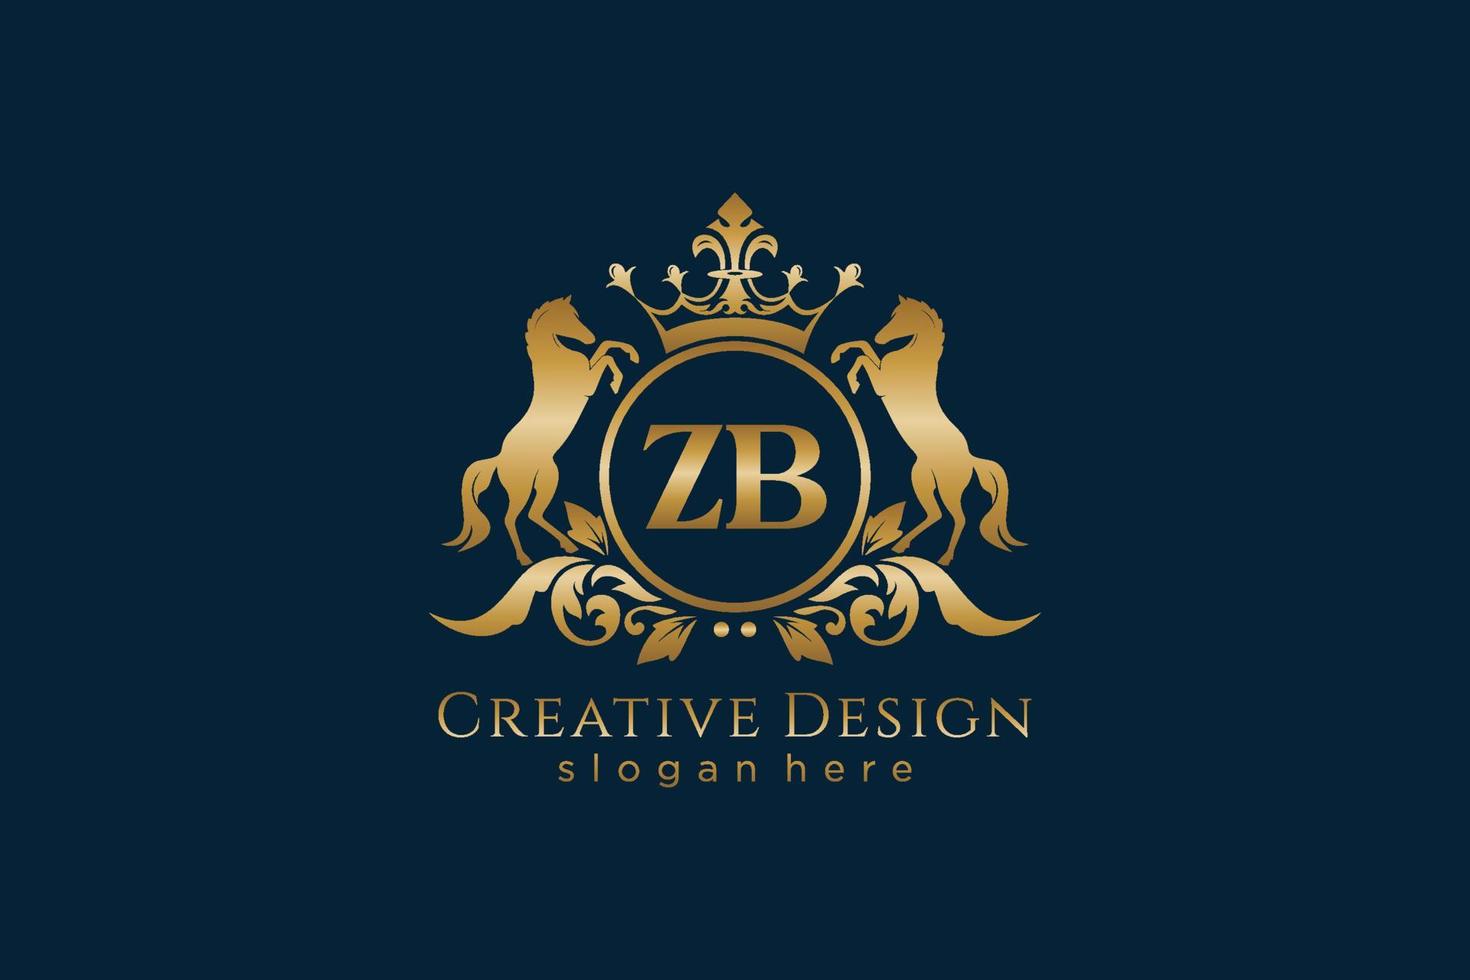 cresta dorada retro inicial zb con círculo y dos caballos, plantilla de placa con pergaminos y corona real - perfecto para proyectos de marca de lujo vector